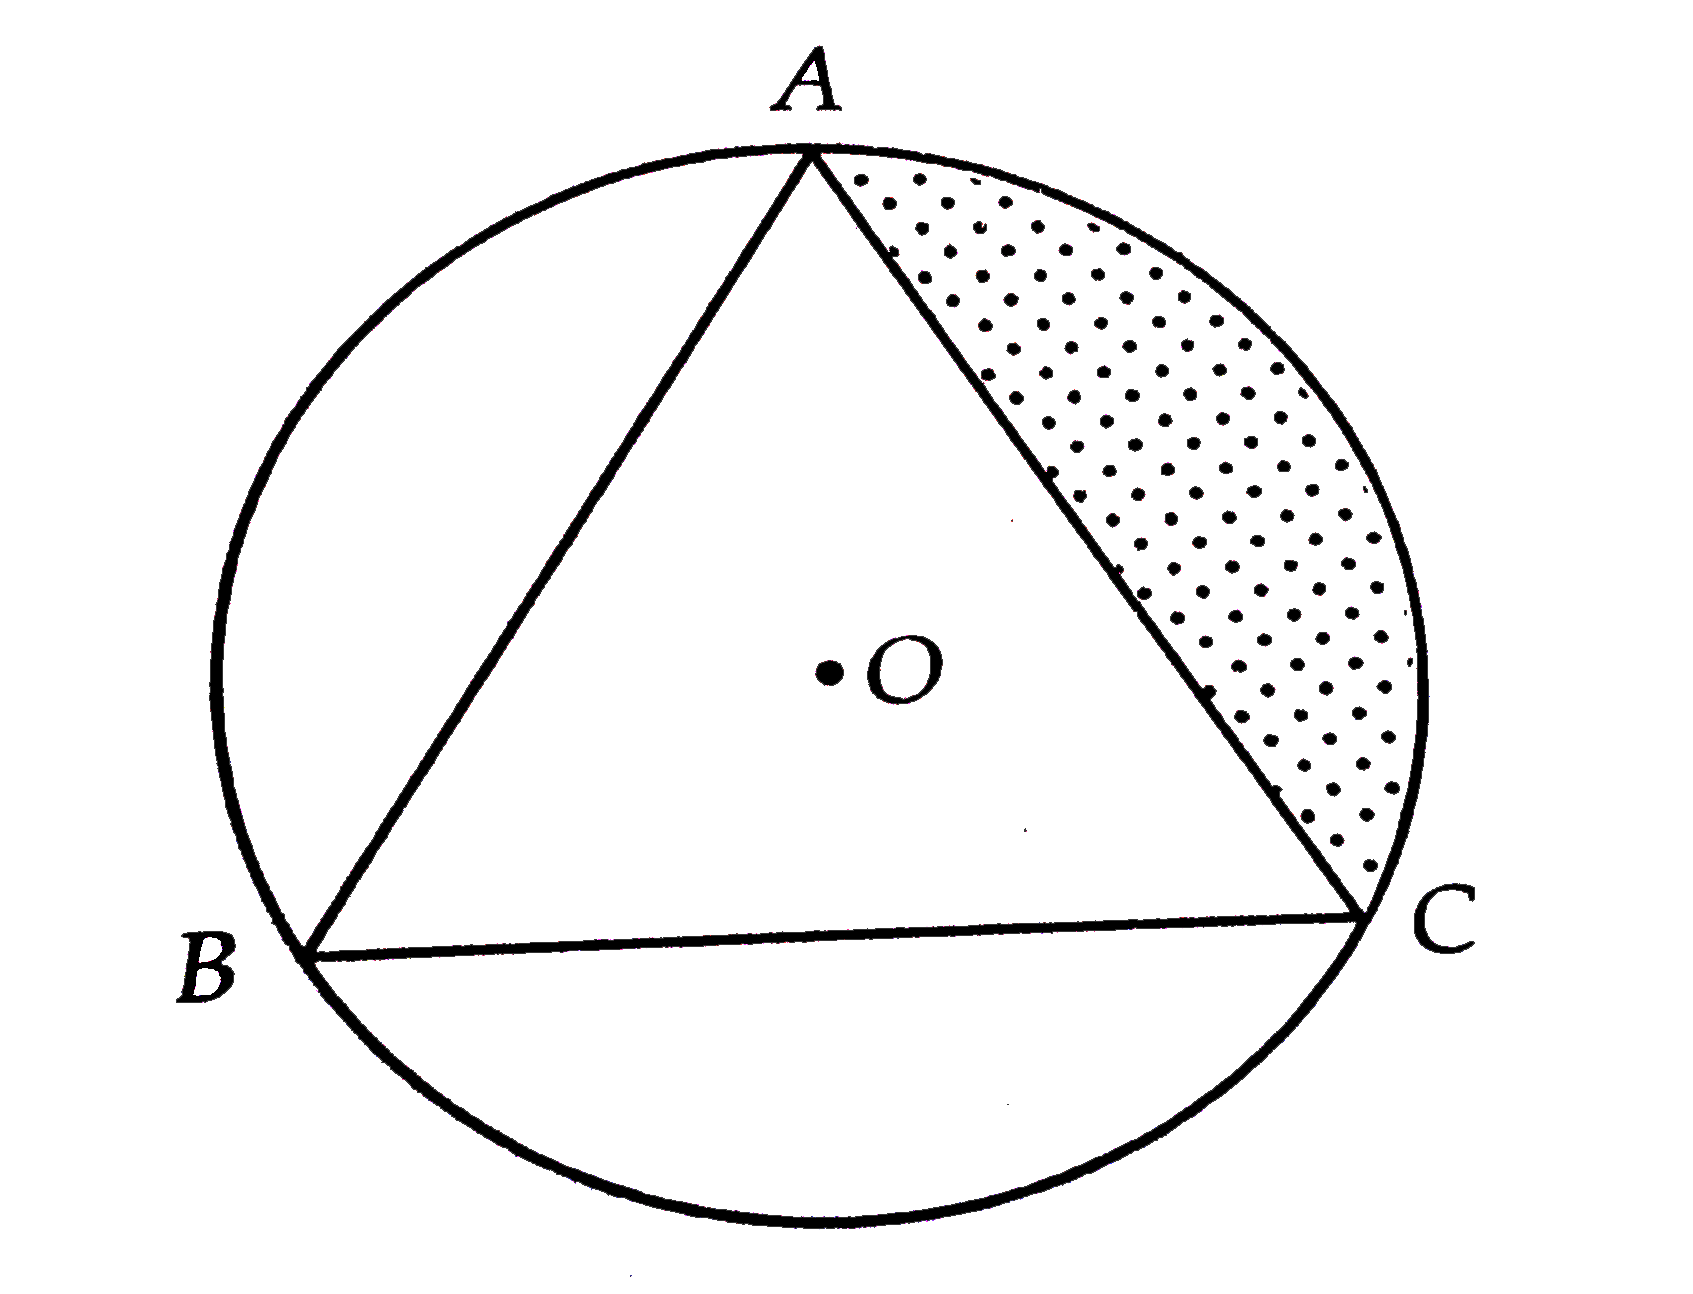 चित्र में, केन्द्र O तथा 4 सेमी. त्रिज्या वाले वृत्त के अन्दर एक समबाहु त्रिभुज ABC बनाया गया है | छायांकित भाग का क्षेत्रफल ज्ञात कीजिए |